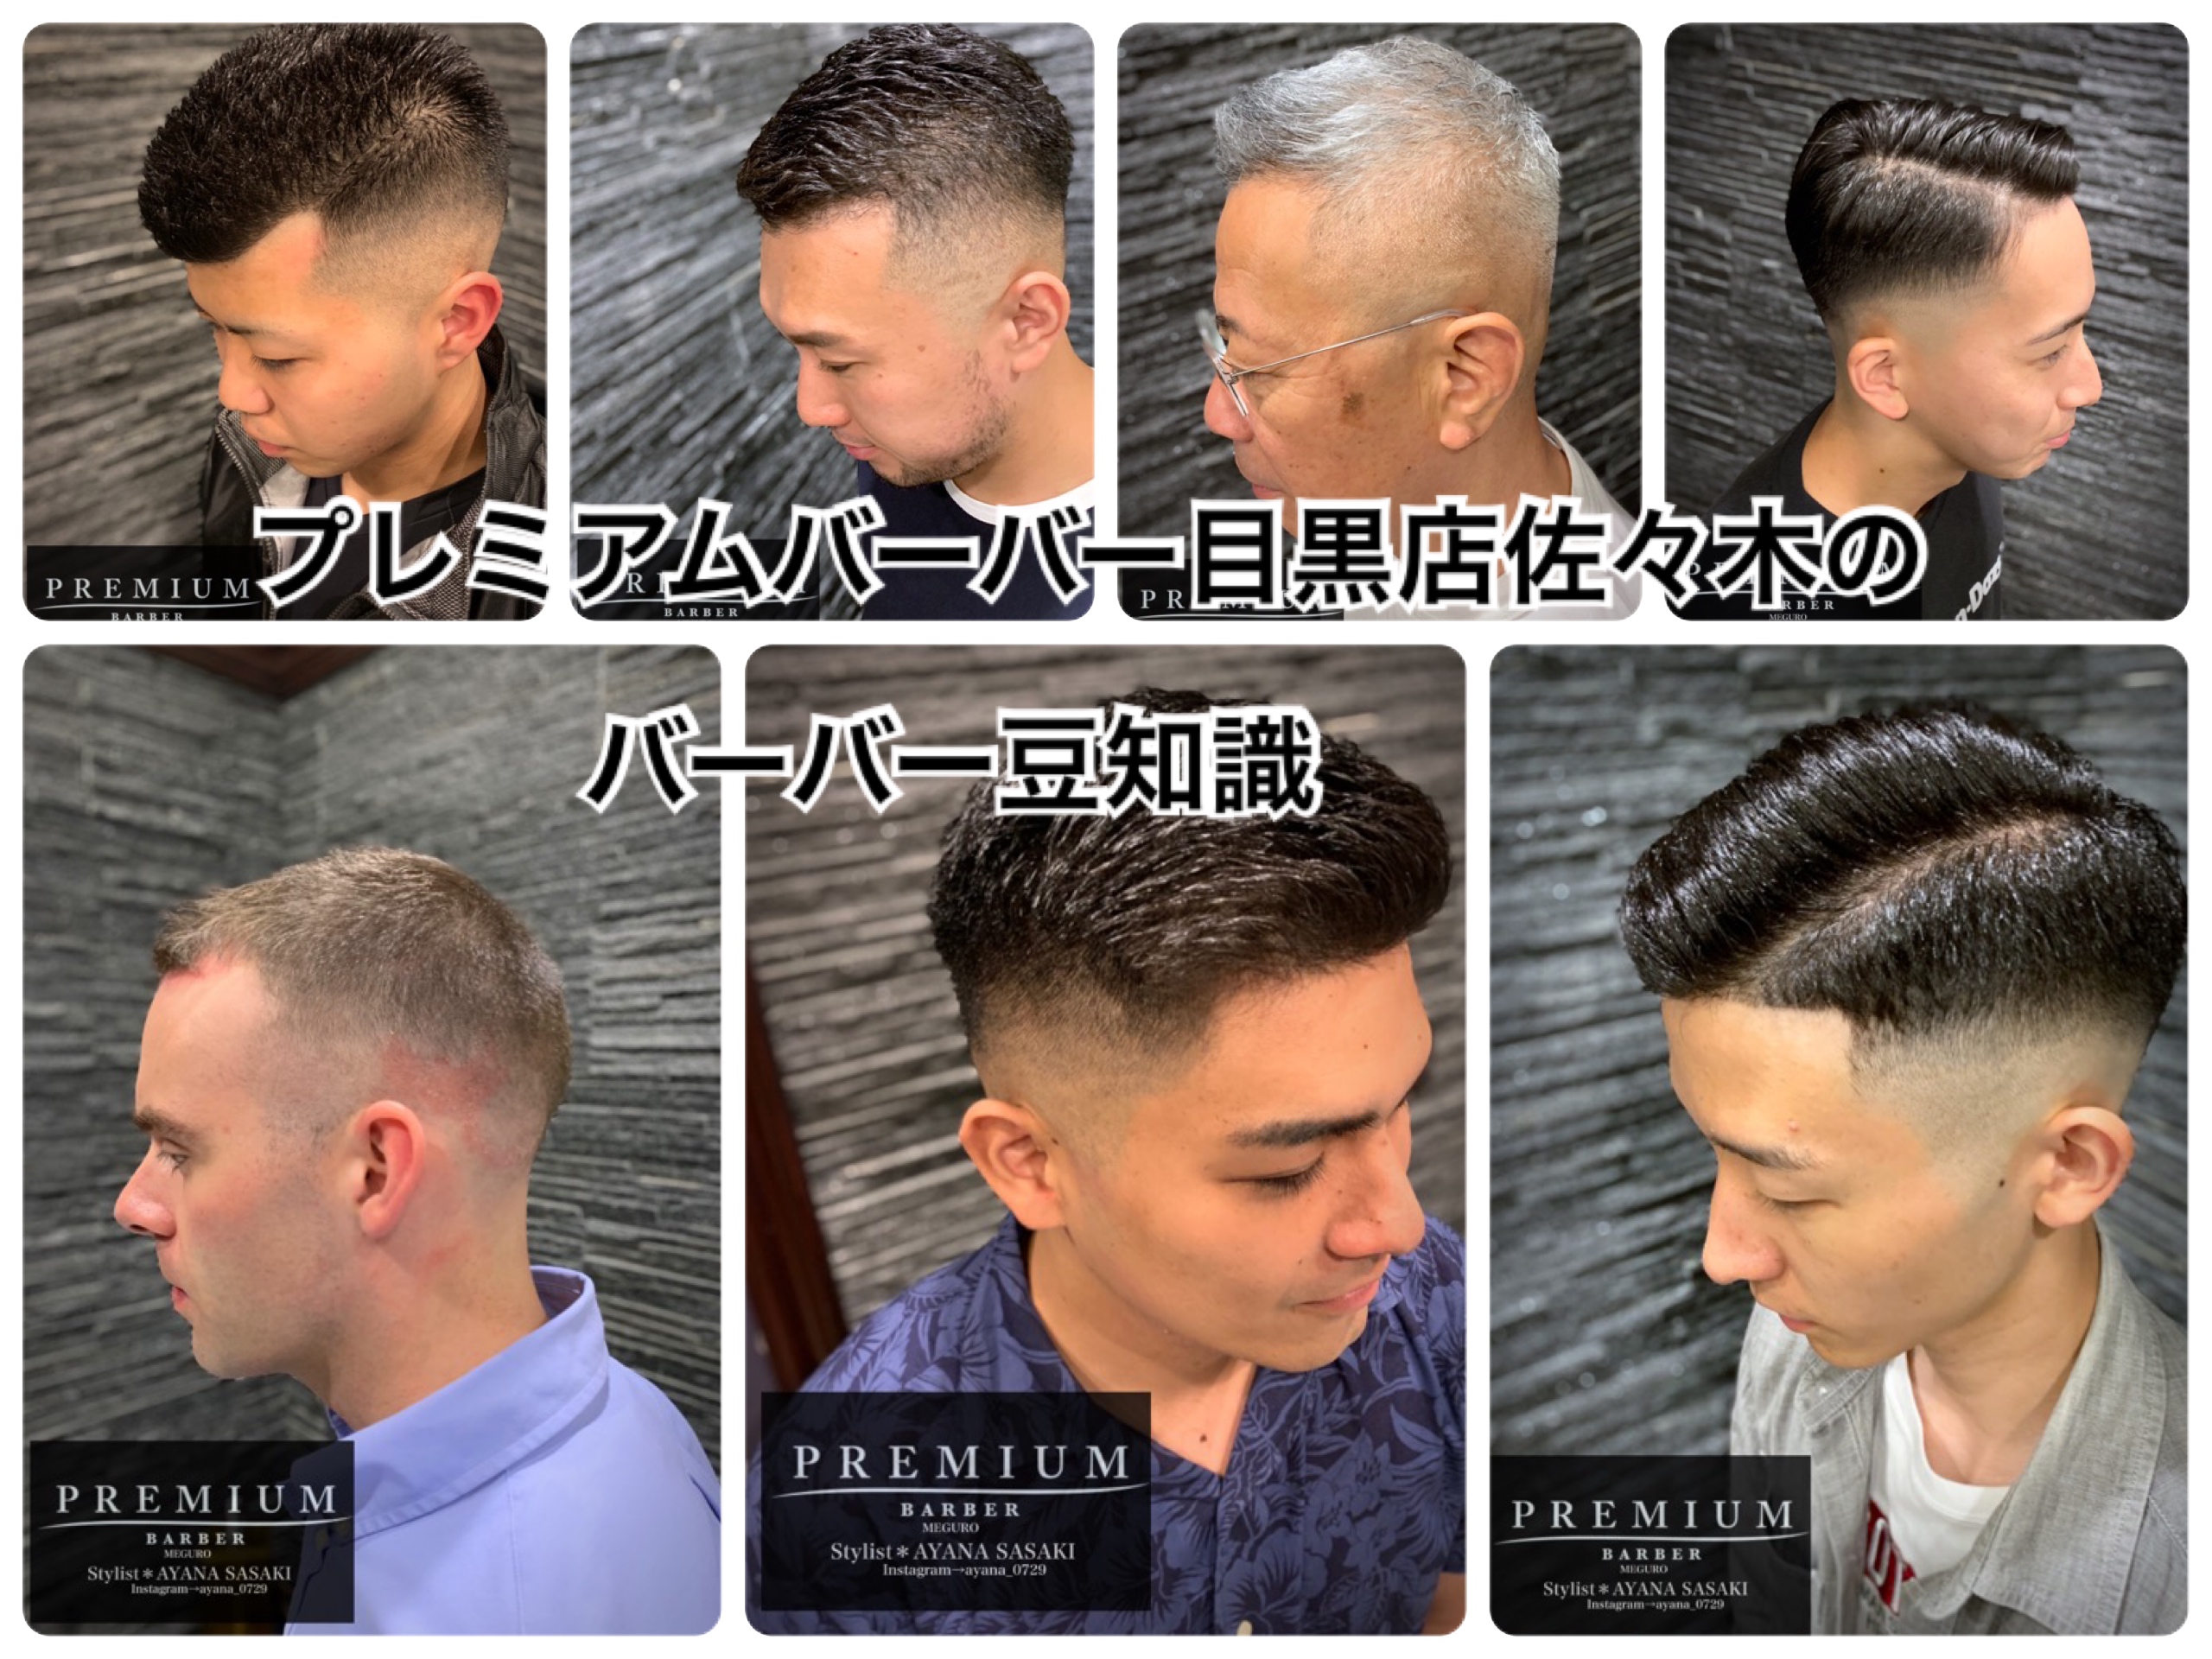 ラグビー選手の髪型 かっこいいバーバースタイル ブログ 渋谷原宿 高級理容室 床屋 ヘアサロン Premium Barber プレミアムバーバー